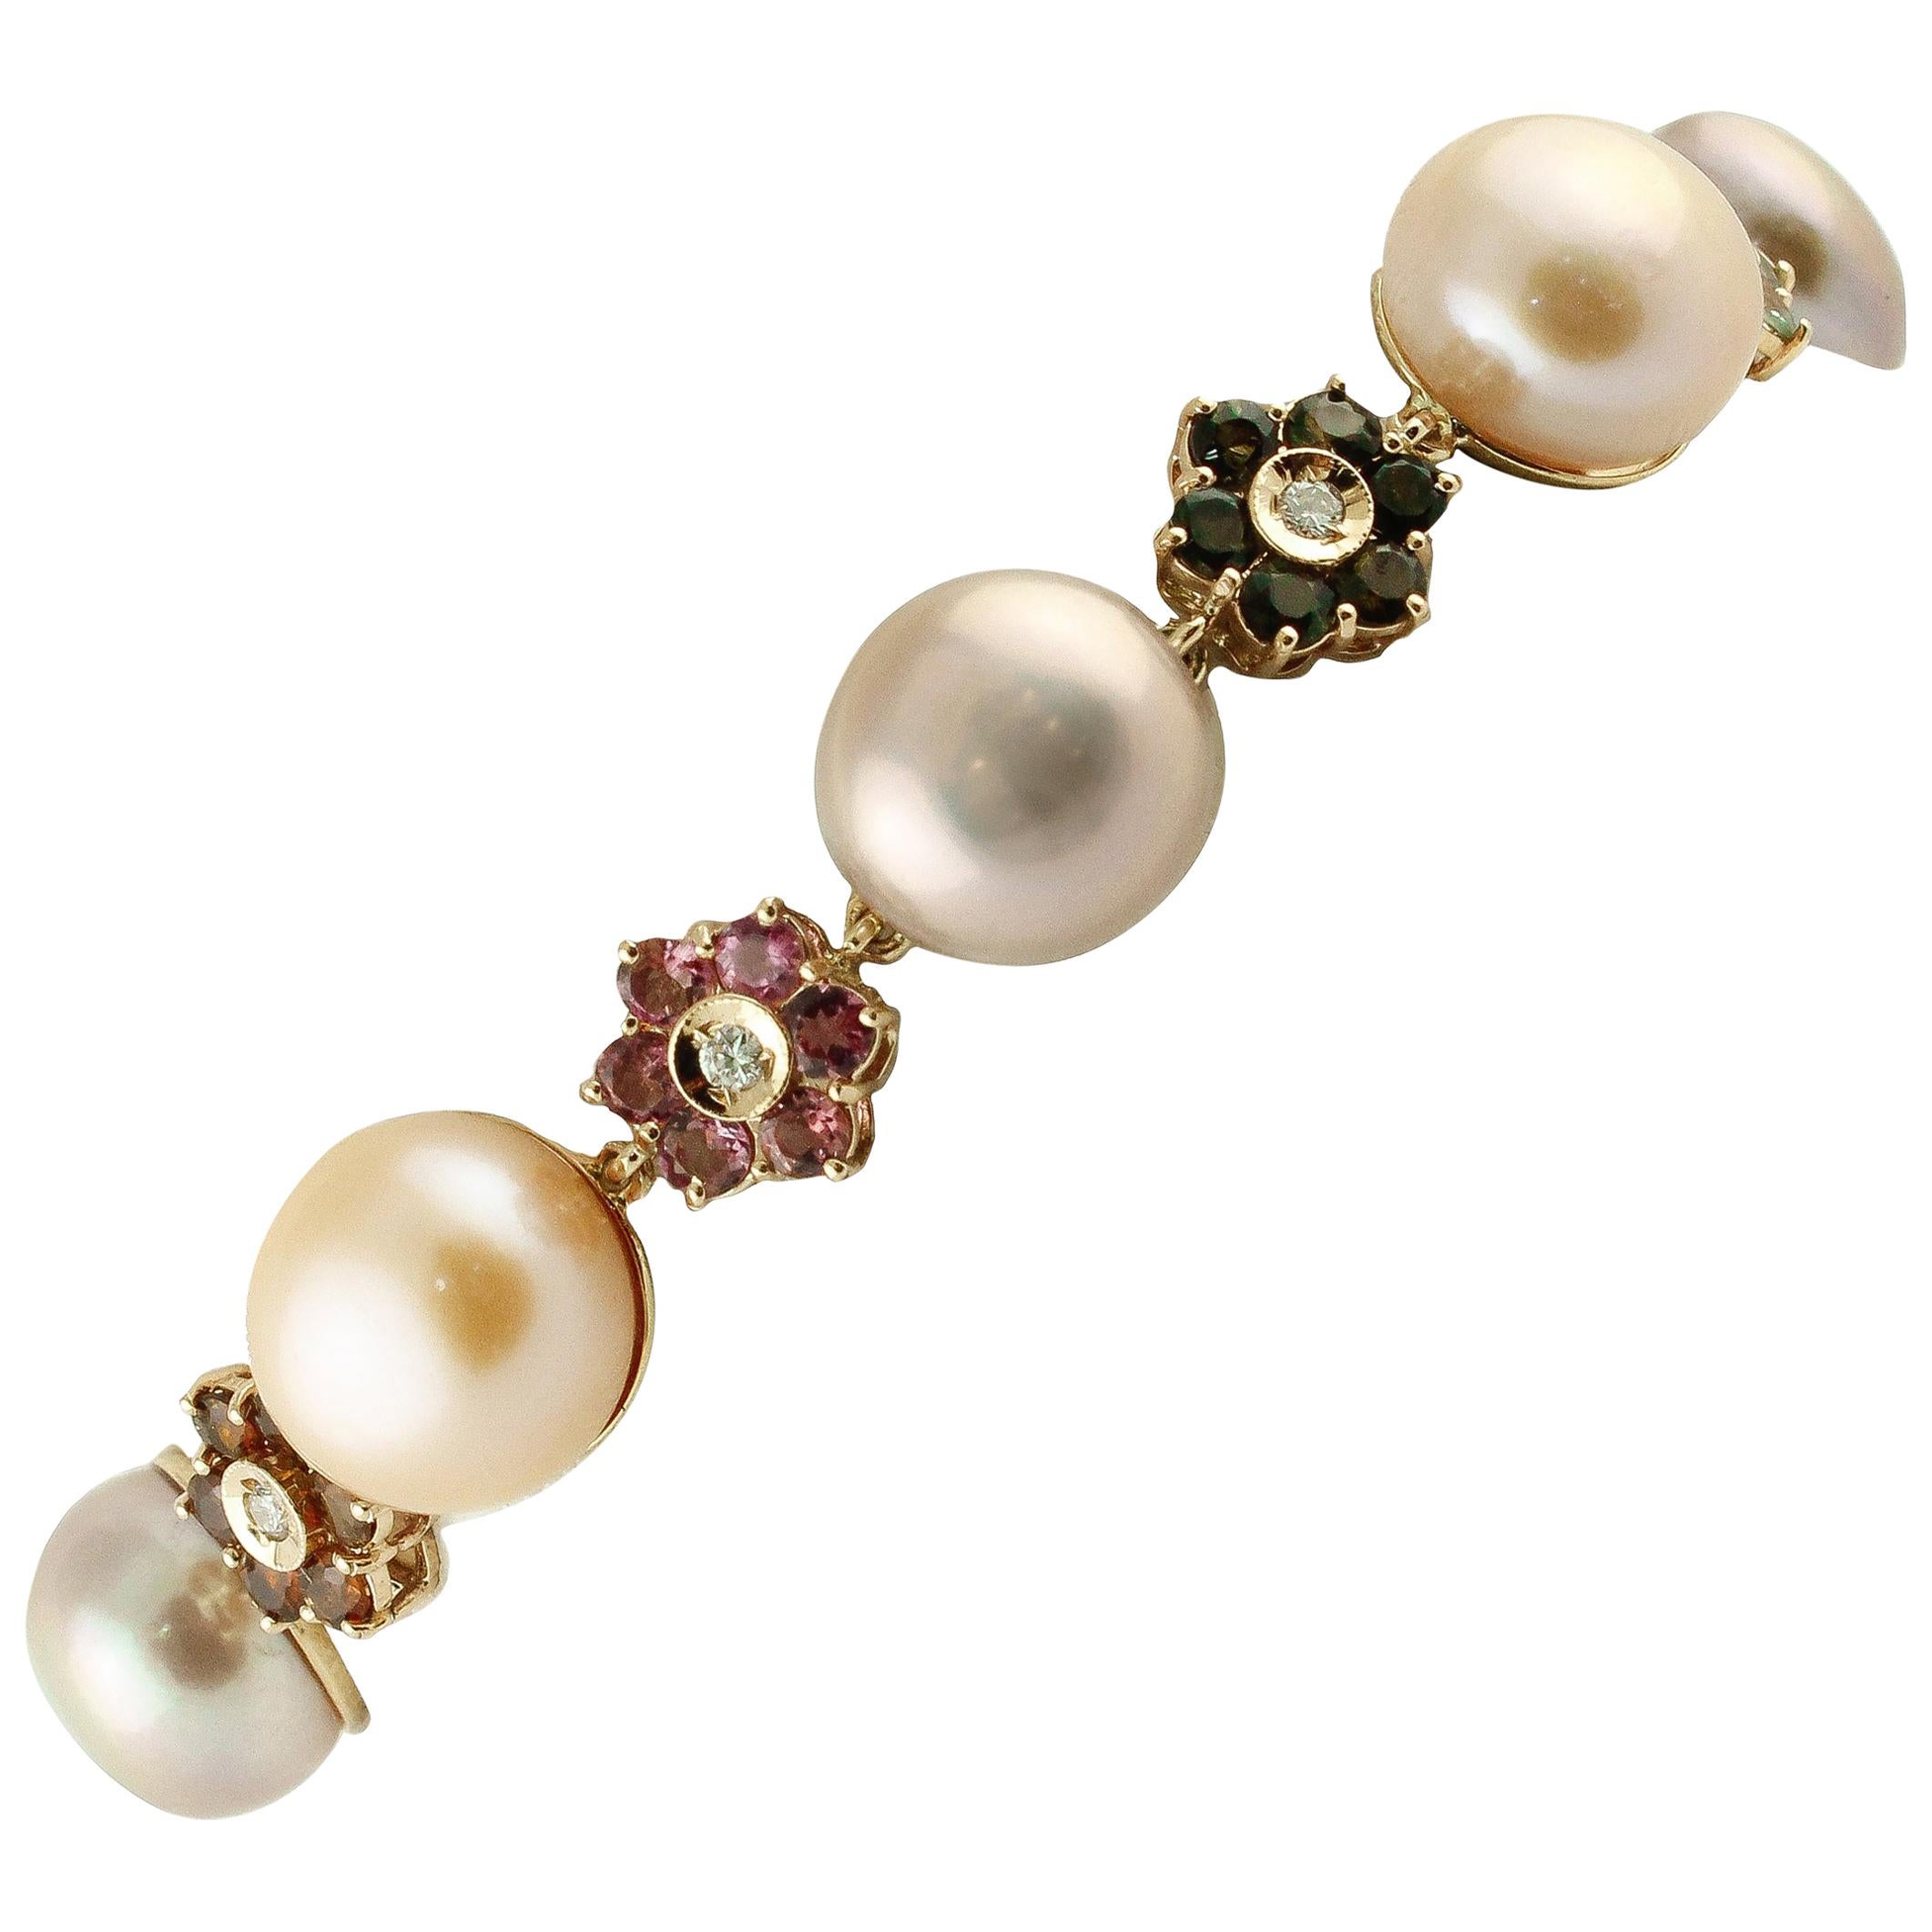 Gliederarmband aus Roségold mit Diamanten, mehrfarbigen Tormaline, hellrosa-Violet-Perlen und Perlen